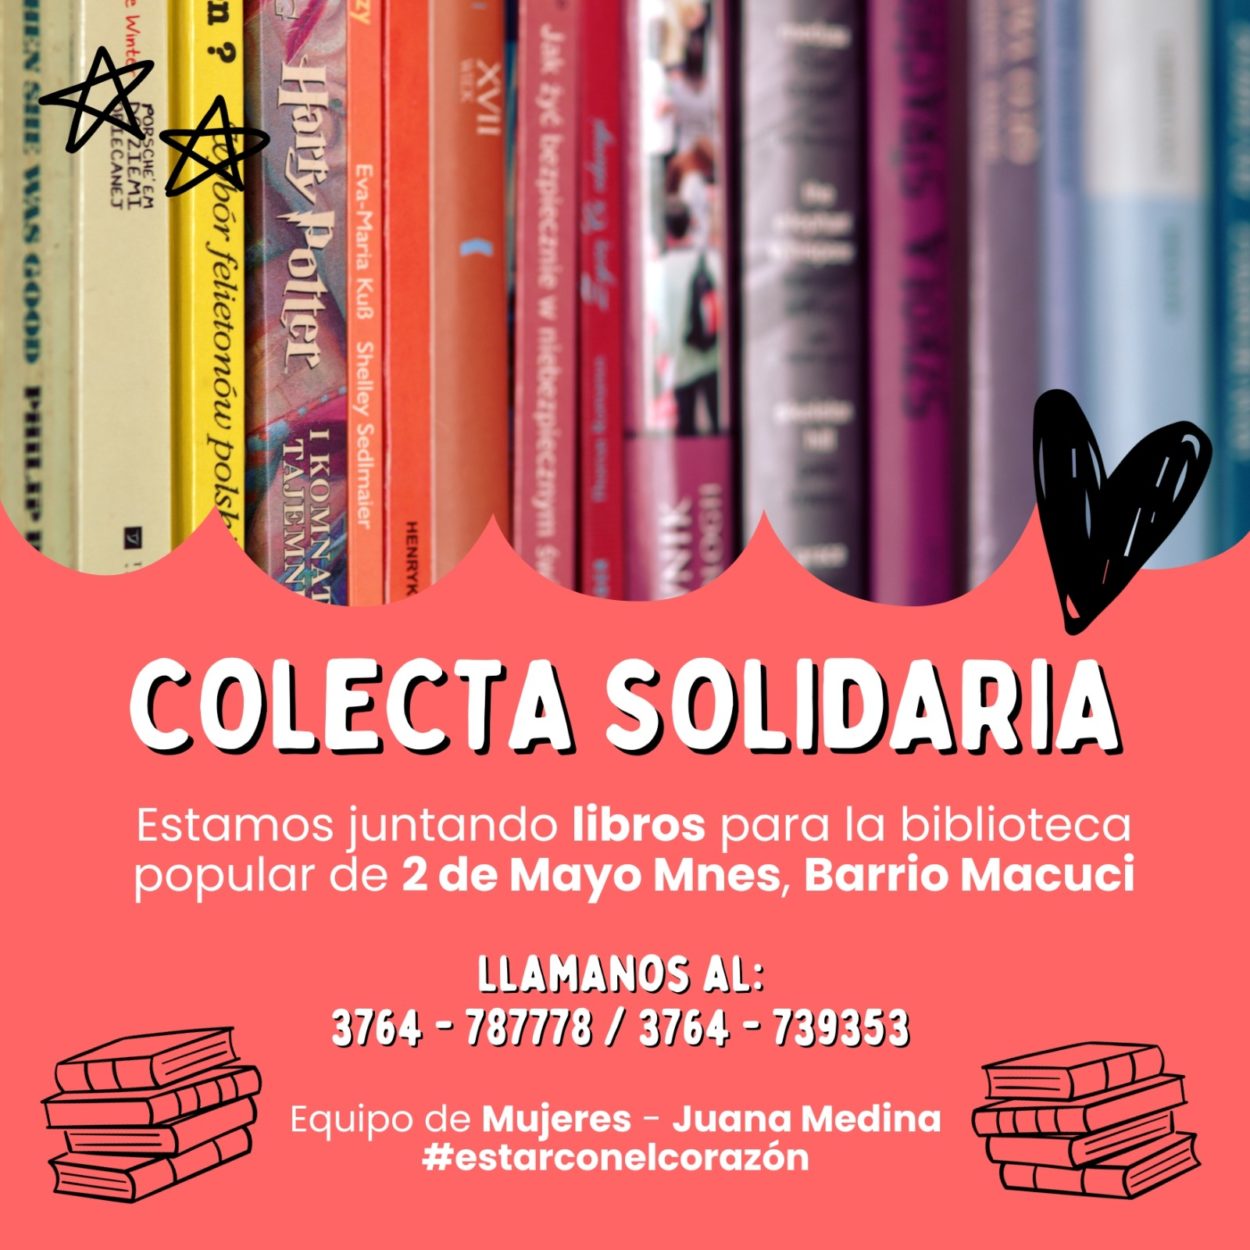 Inician colecta solidaria para biblioteca de Dos de Mayo imagen-2